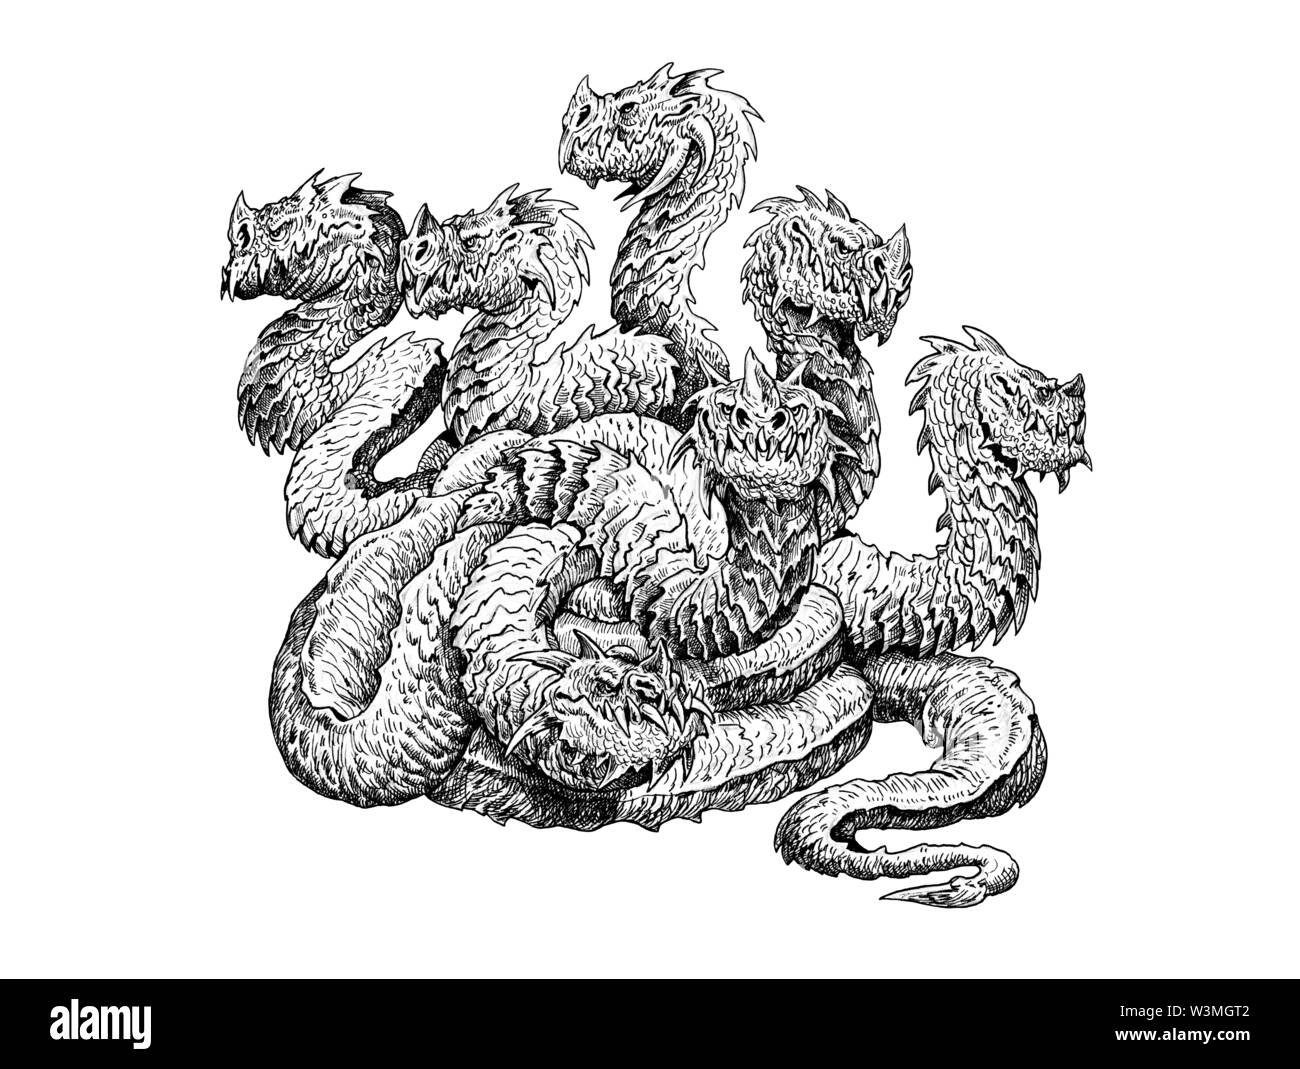 Lerne - créature mythologique. Dessin dragon tête multiples. Monstre redoutable. Banque D'Images